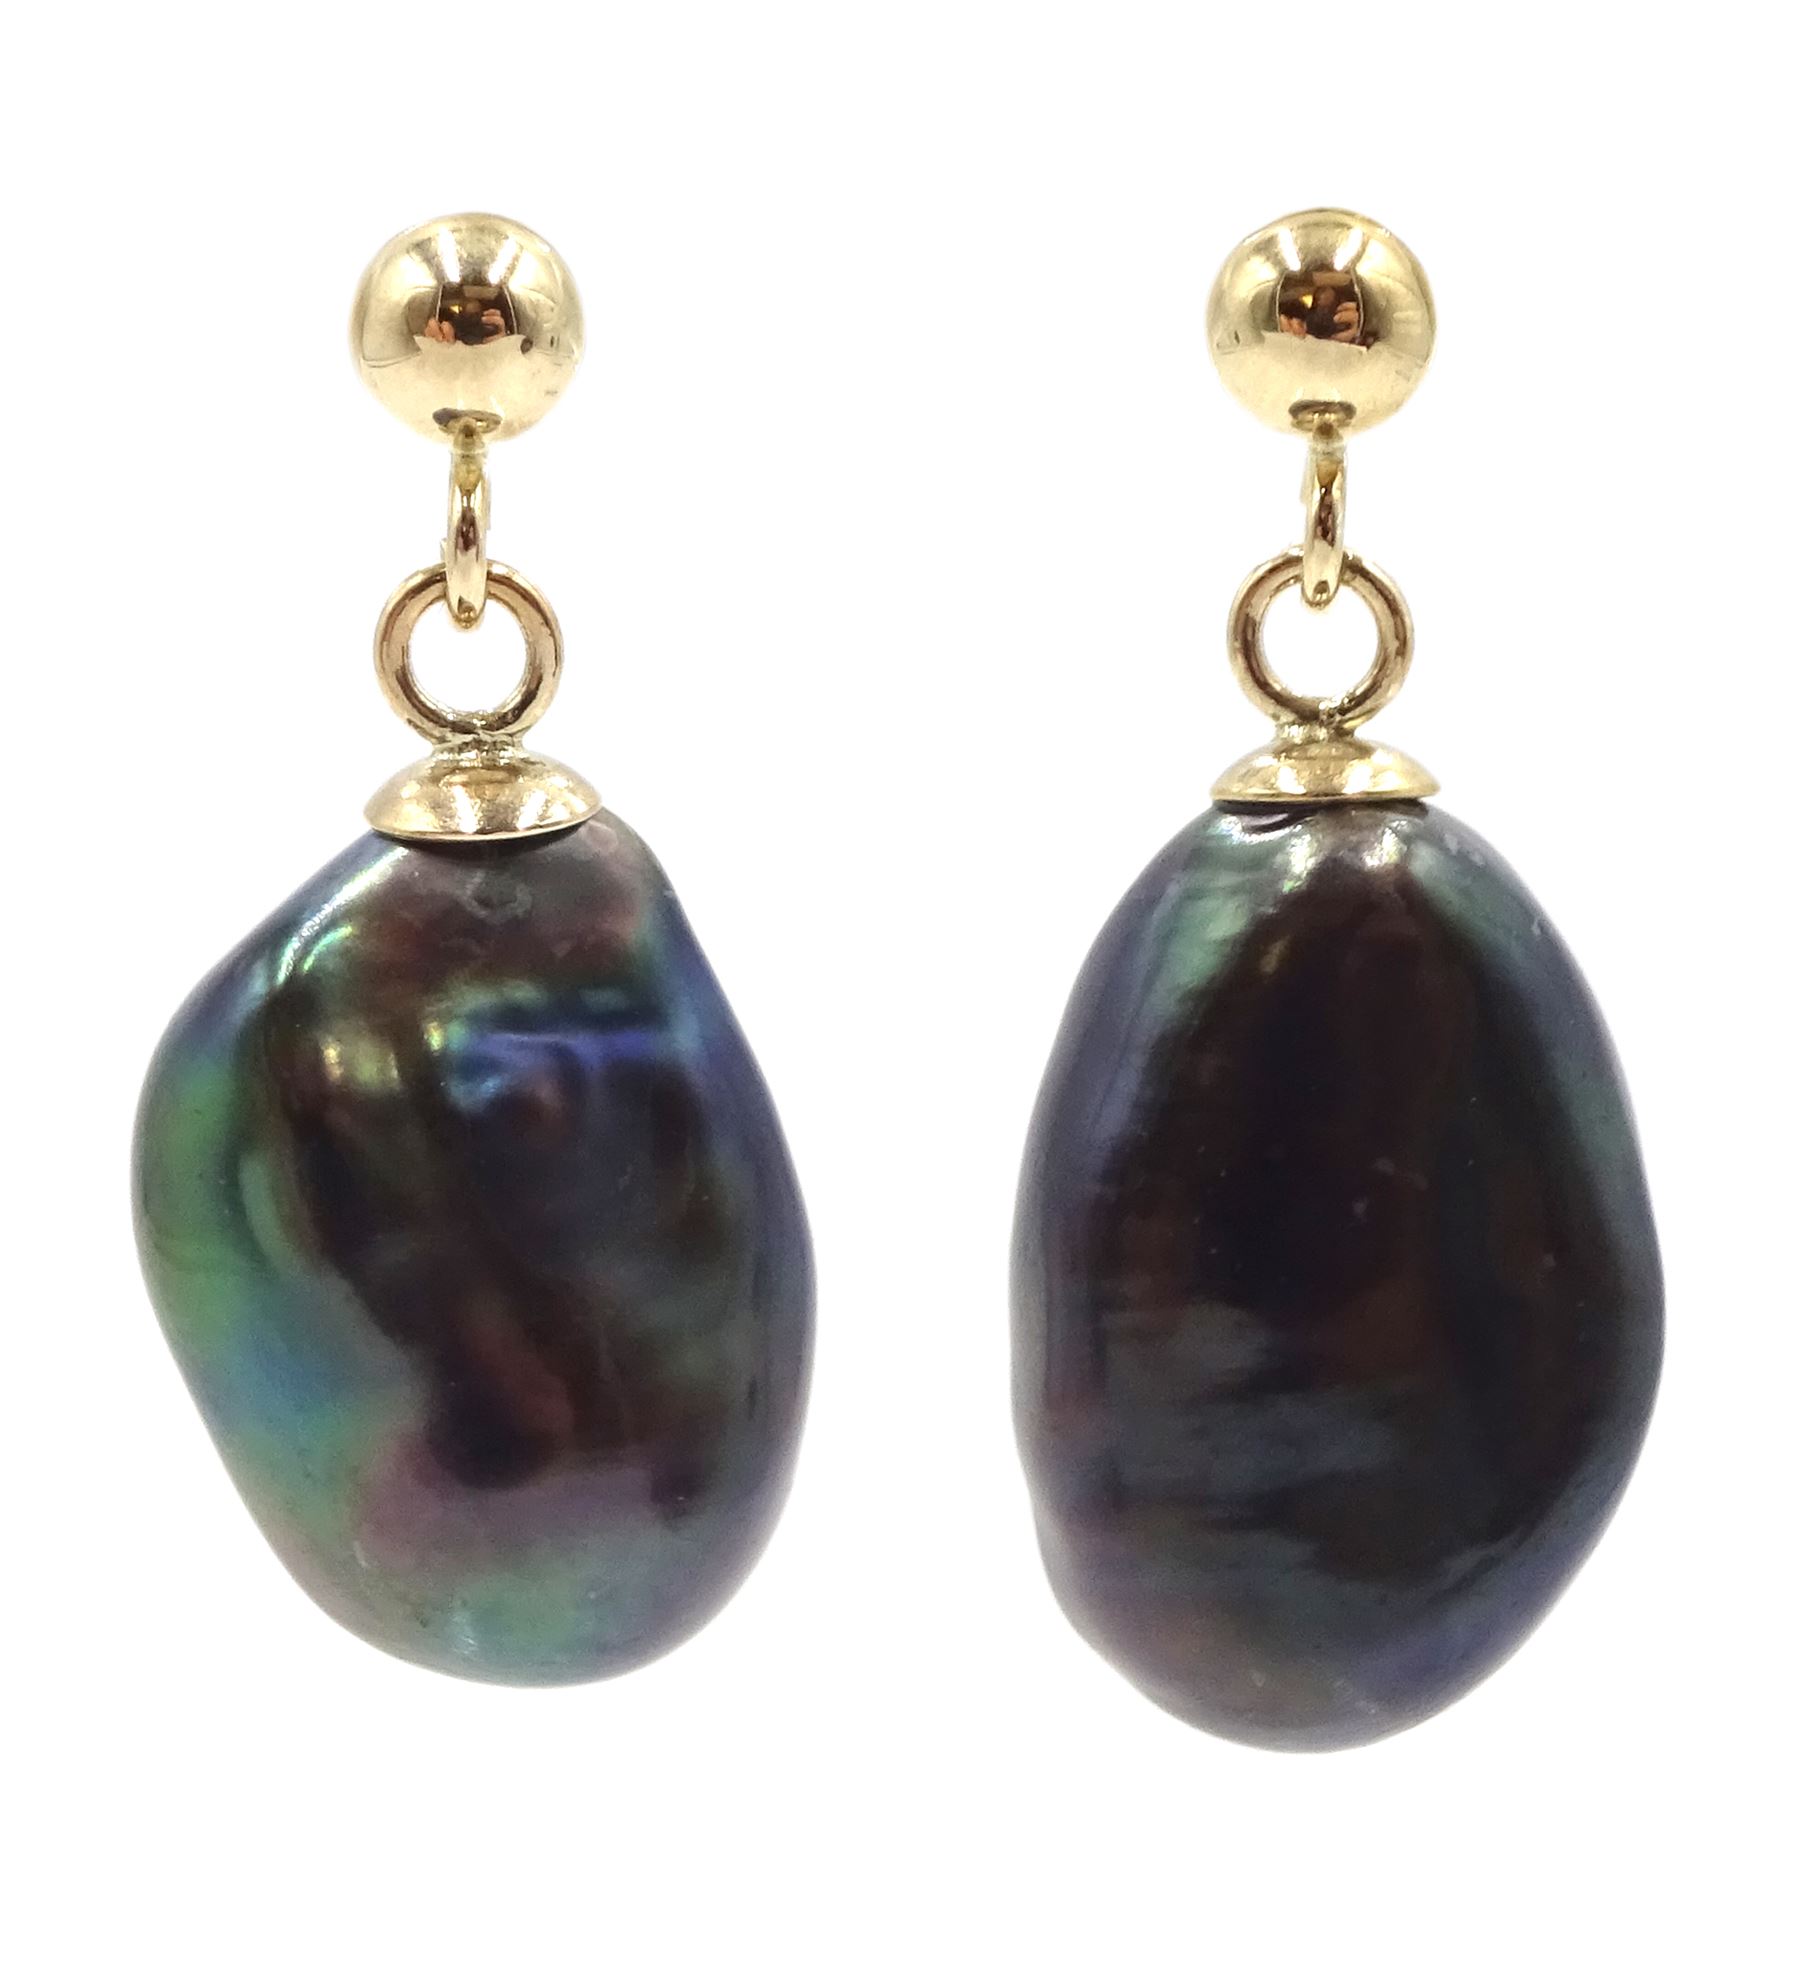 Pair of 9ct gold black pearl pendant stud earrings